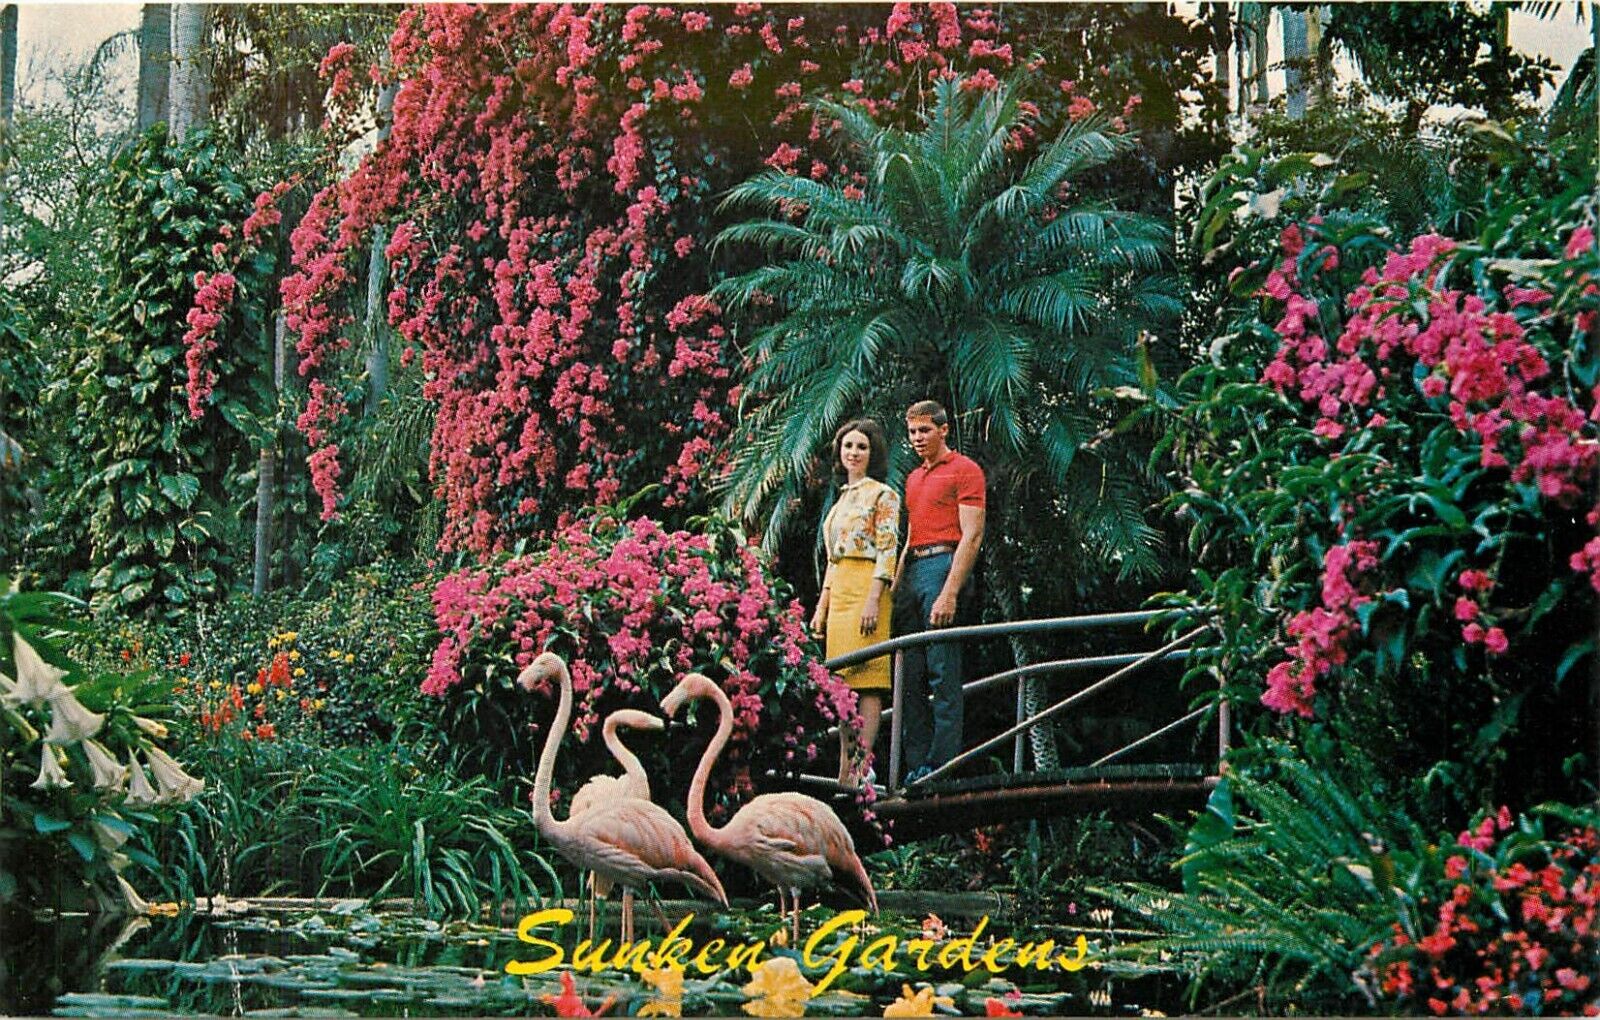 Sunken Gardens St. Petersburg Florida FL Postcard